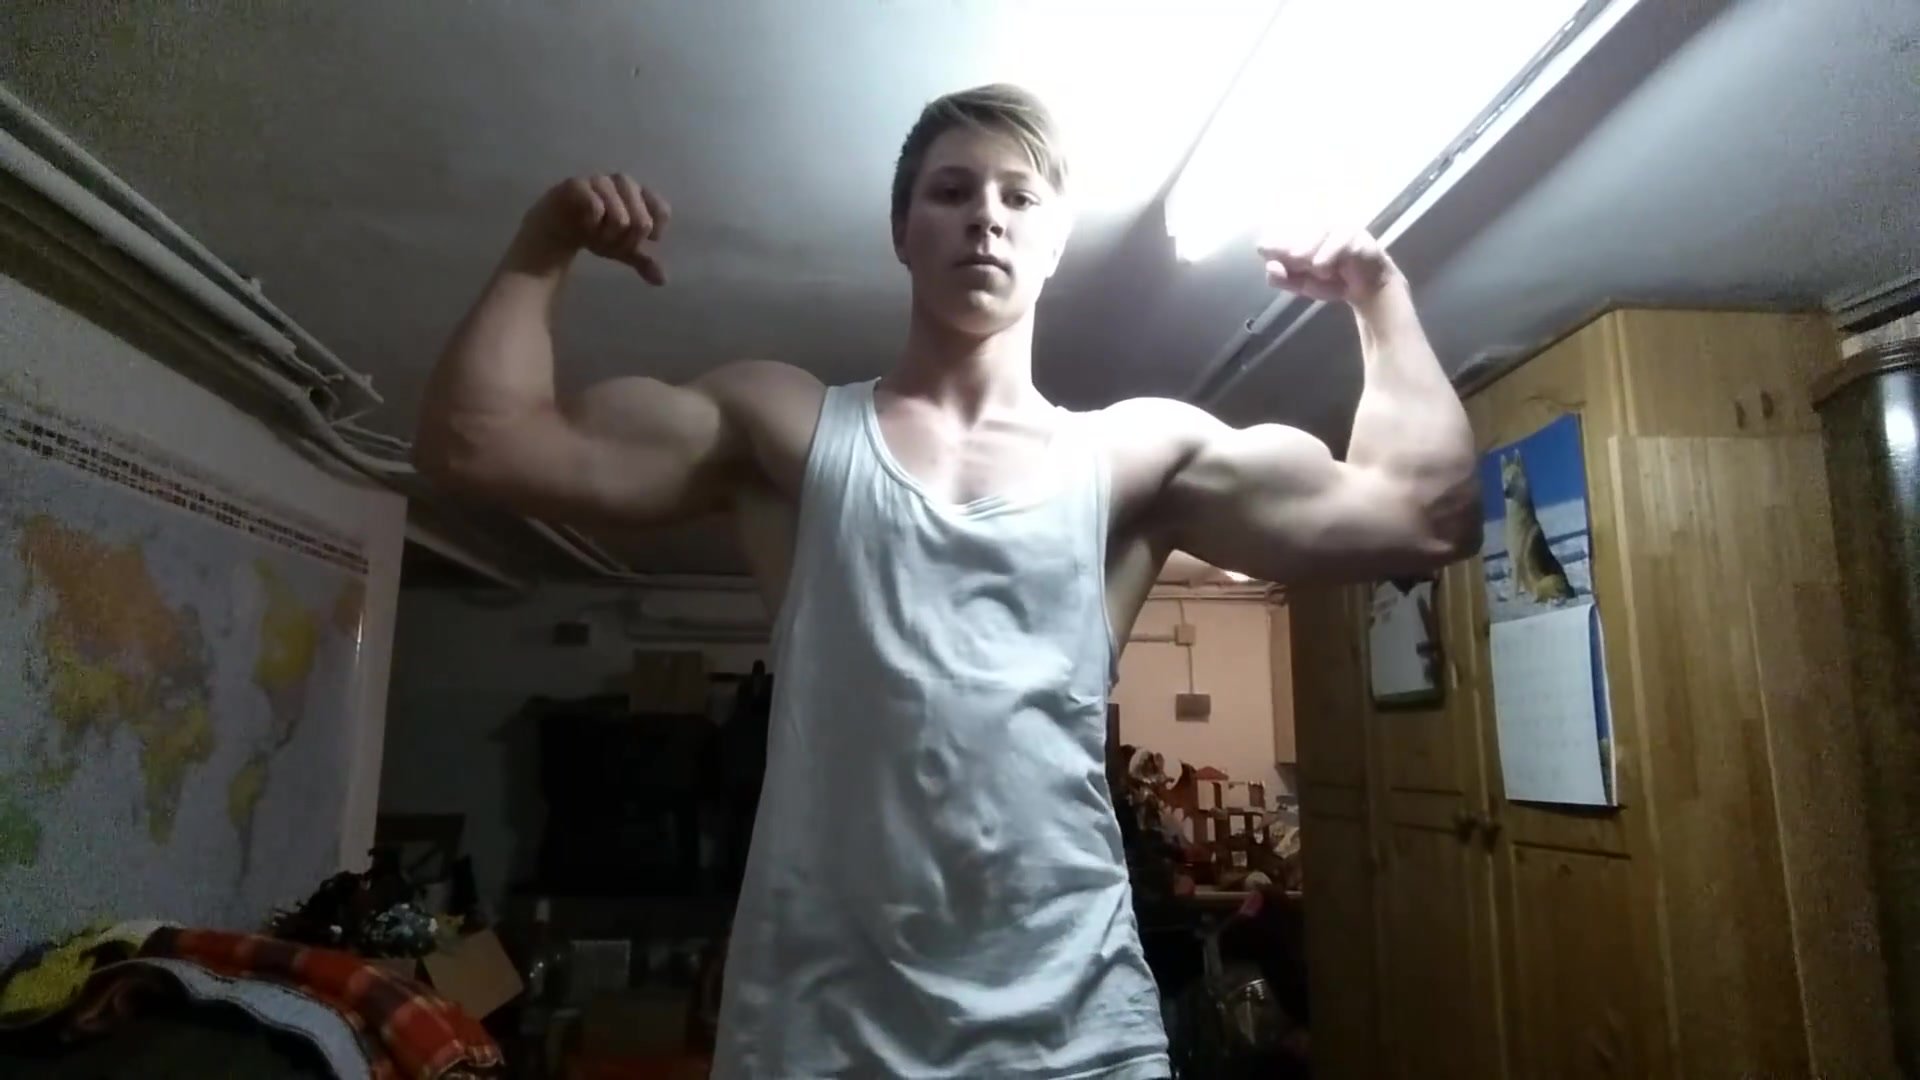 Cute boy biceps